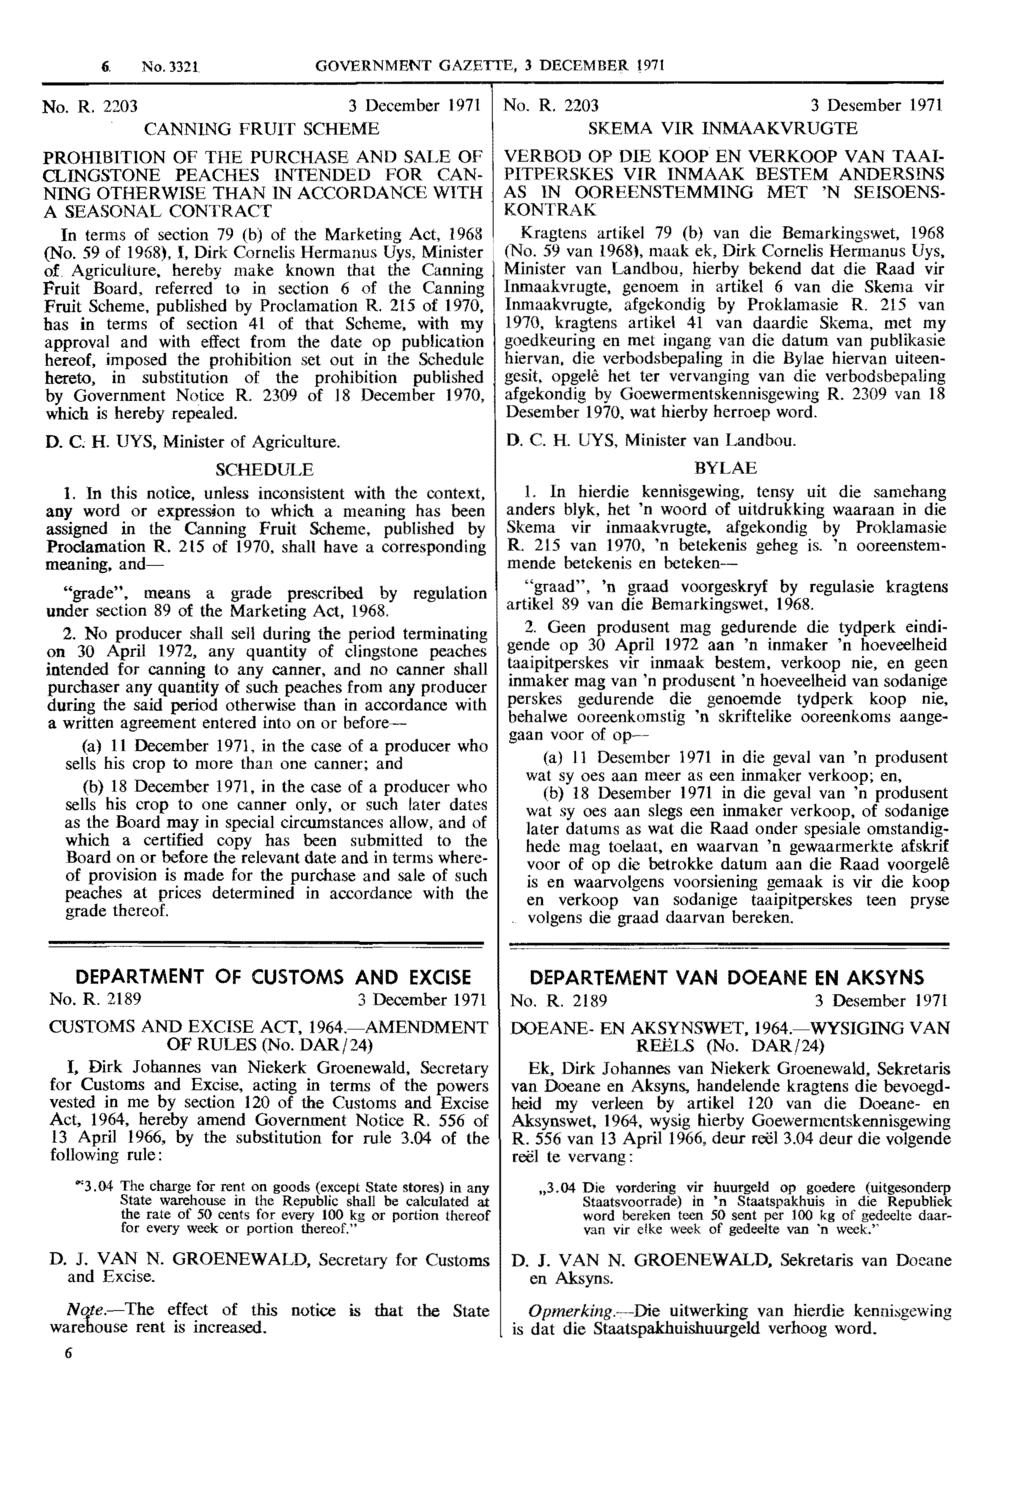 6, No. 3321 GOVERNMENT GAZETTE, 3 DECEMBER 1971 No. R.